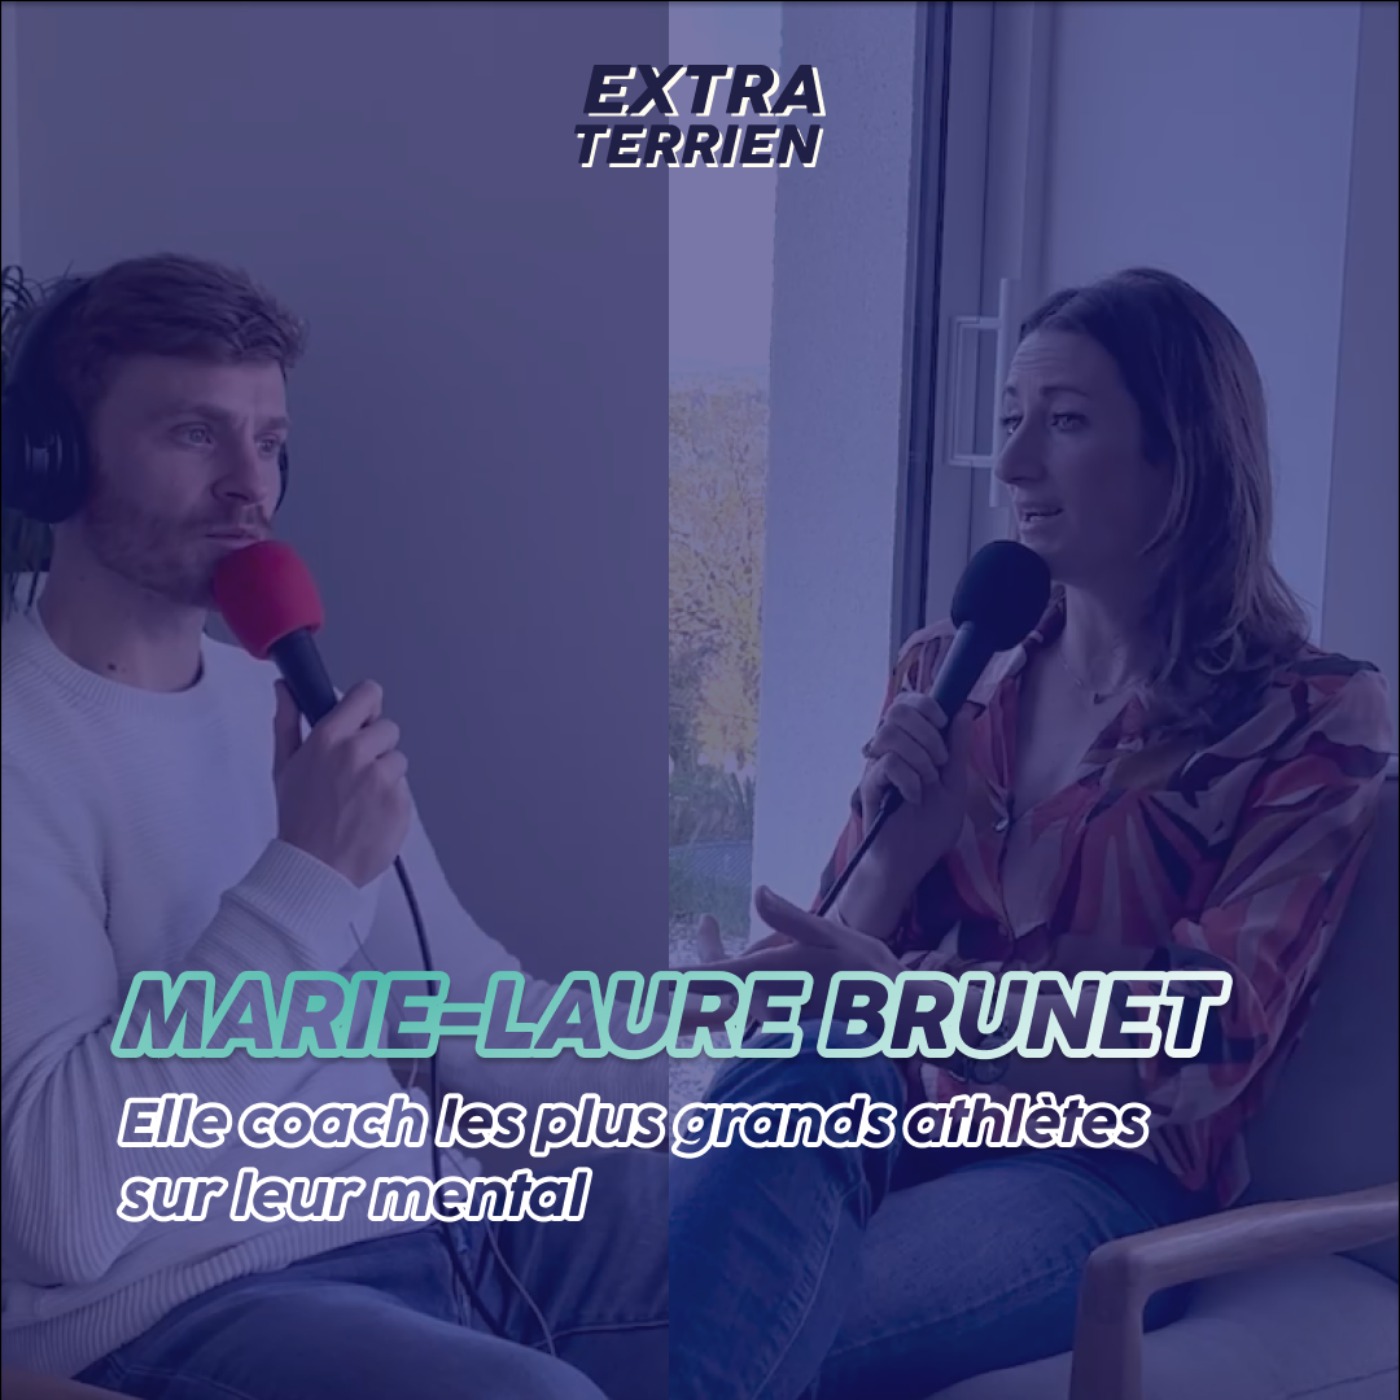 Extrait - Marie-Laure Brunet